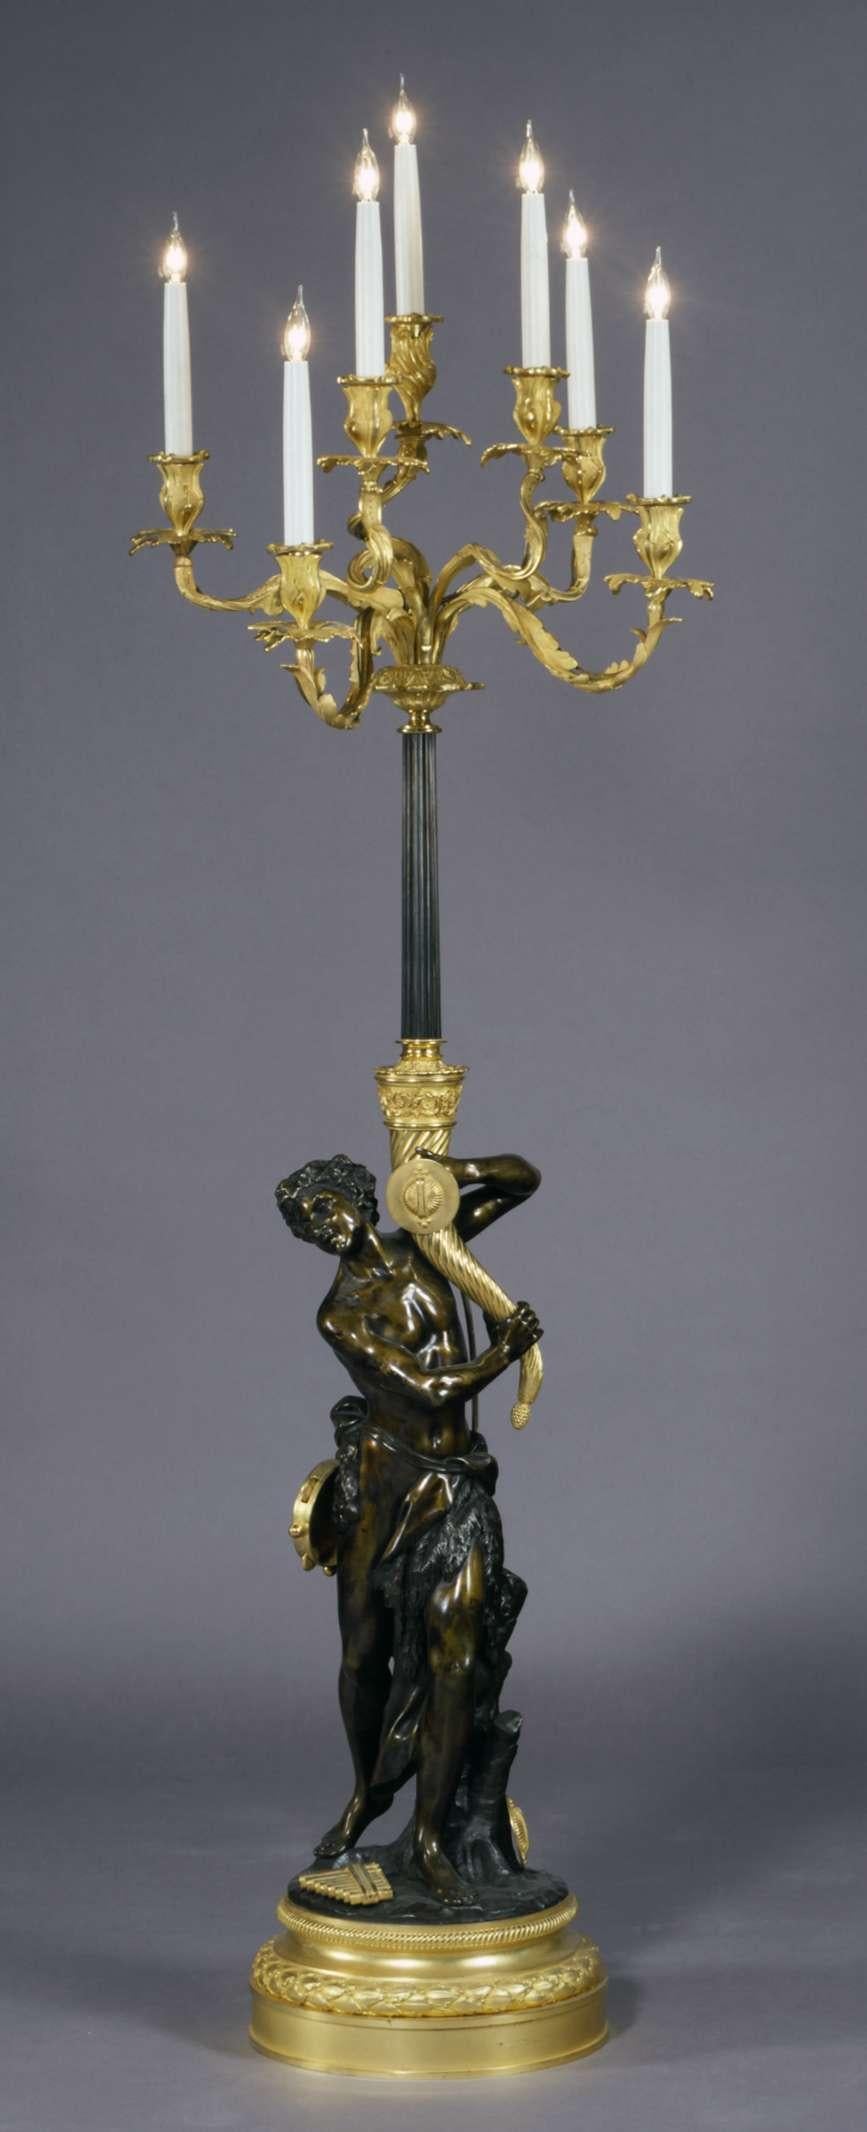 Très beau candélabre sur pied en bronze doré et patiné, d'après un modèle de Clodion.

Français, datant d'environ 1880.

Claude Michael Clodion, (1738-1814), était le gendre du sculpteur Augustin Pajou ; il s'est formé à Paris dans les ateliers